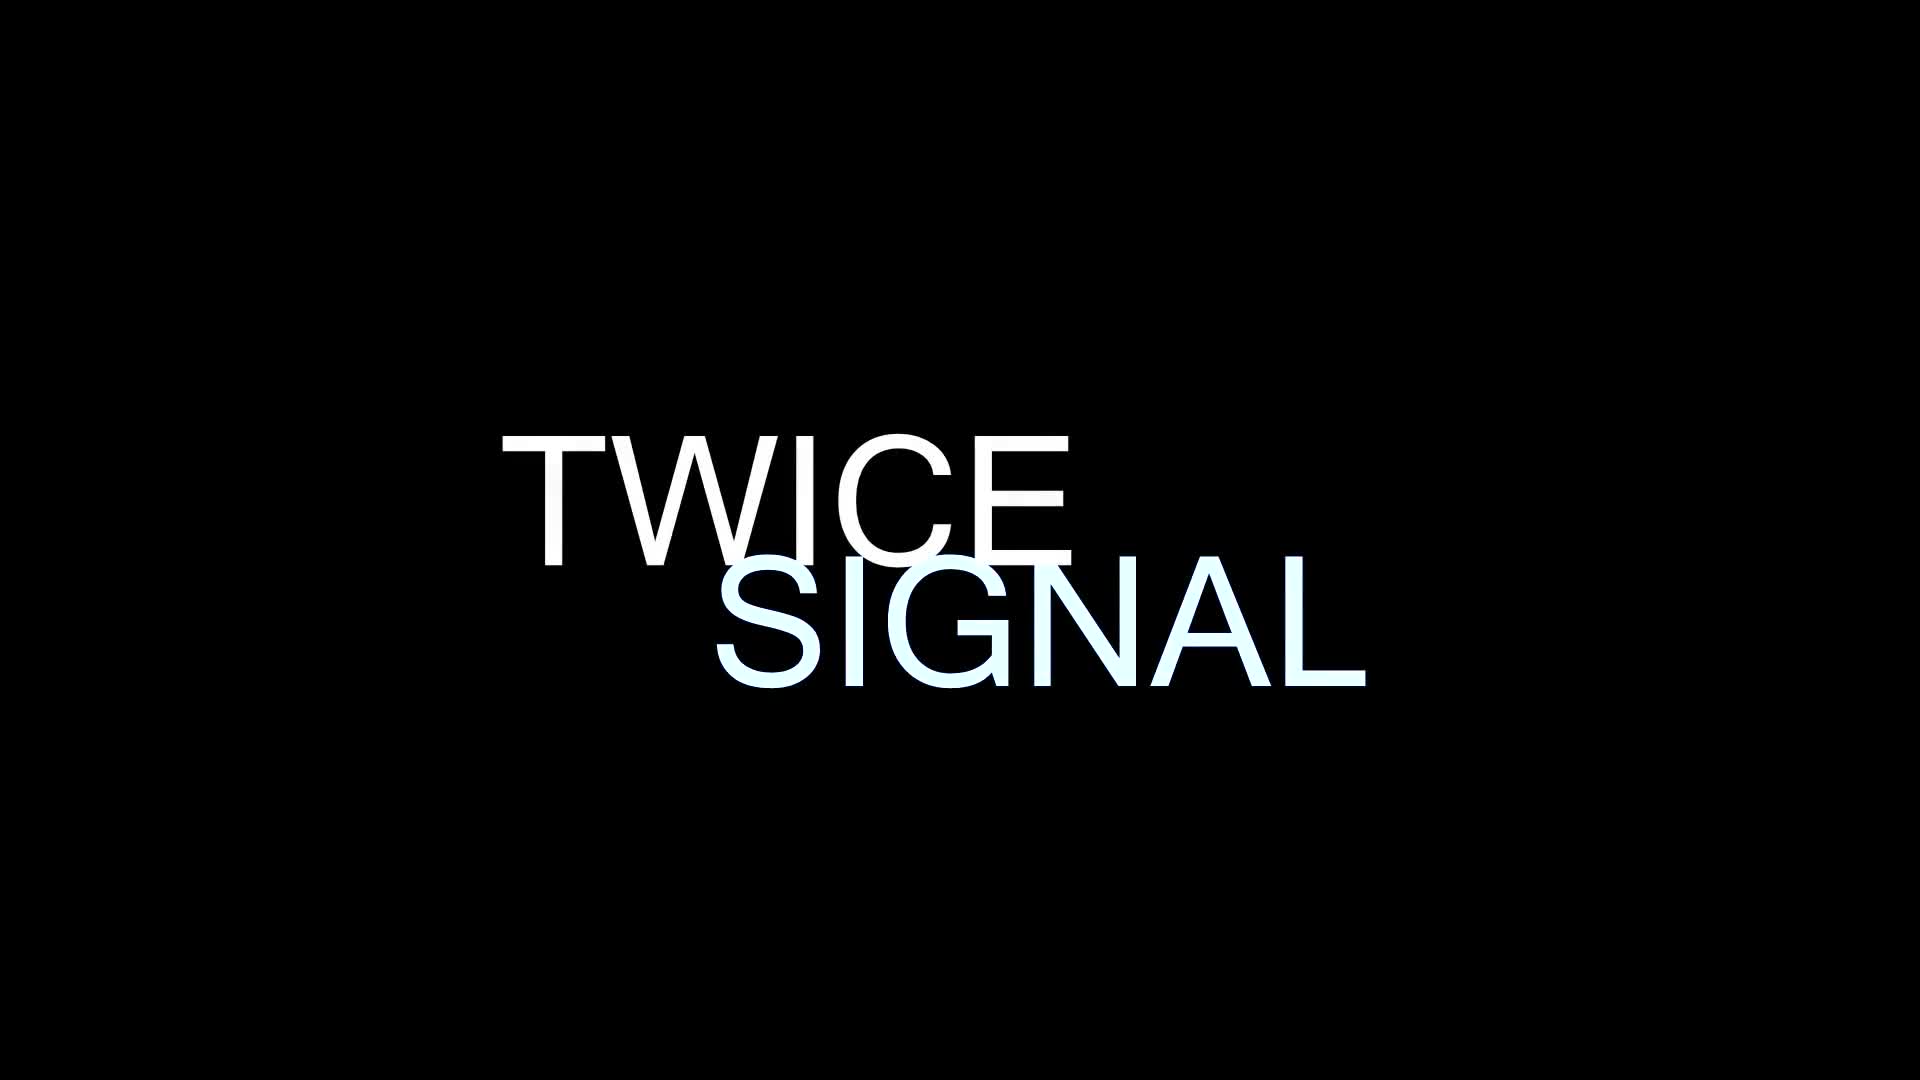 TWICE SIGNAL 트와이스 시그널 안무완곡 cover dance Full ver. WAVEYA